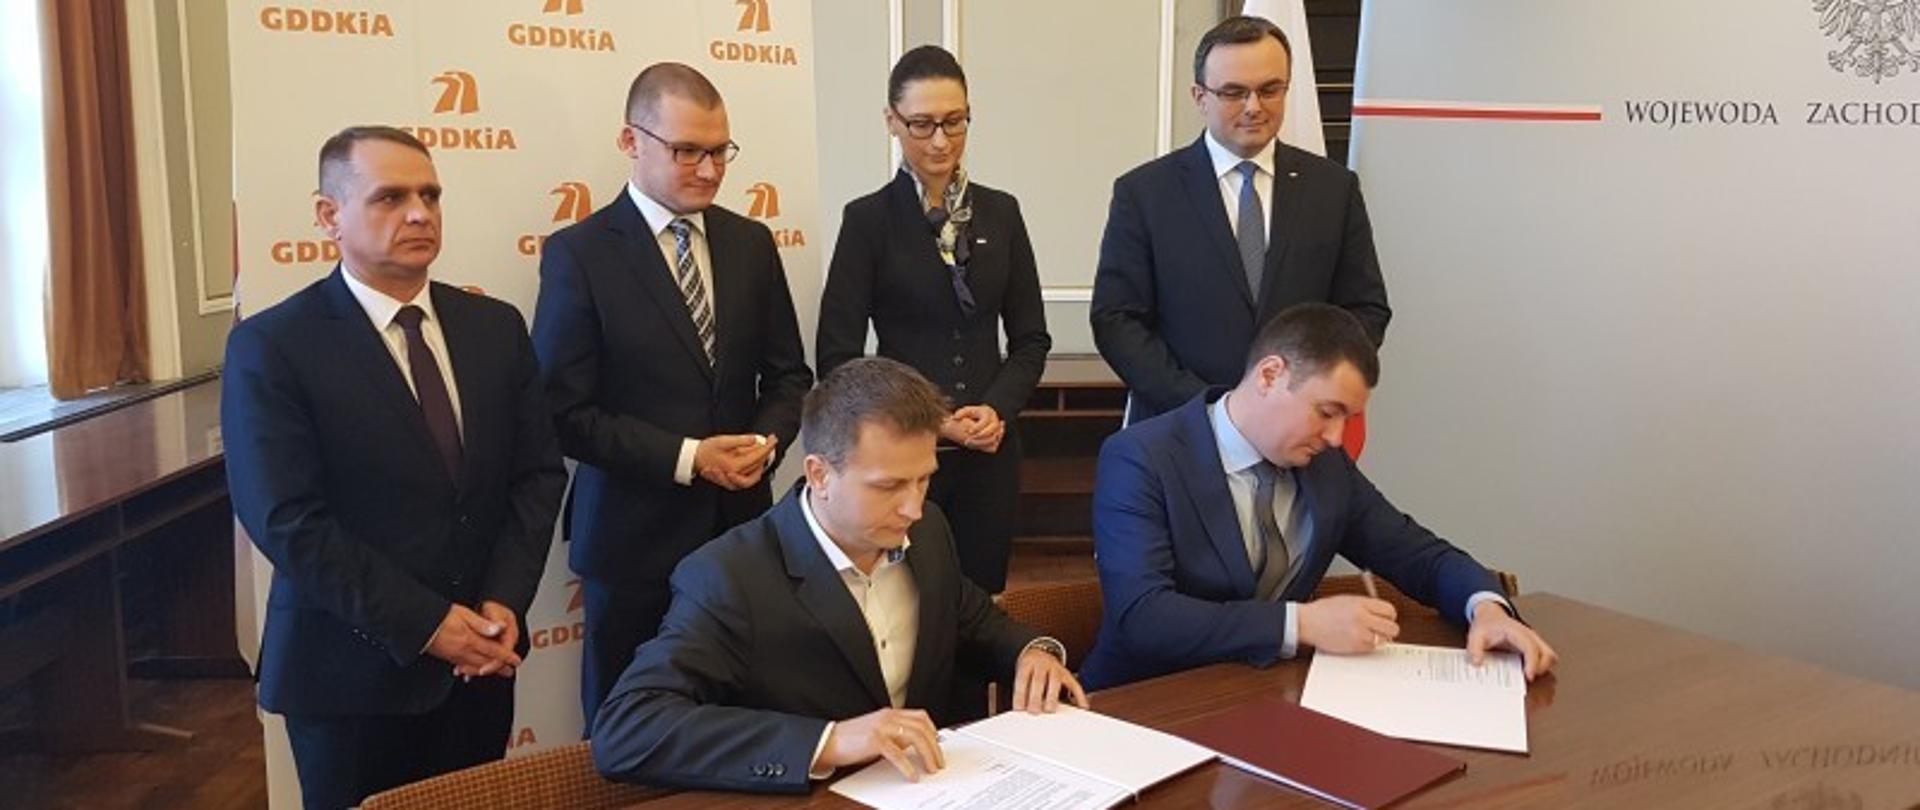 Podpisanie umowy na dokumentację projektową S11 Bobolice – Szczecinek
